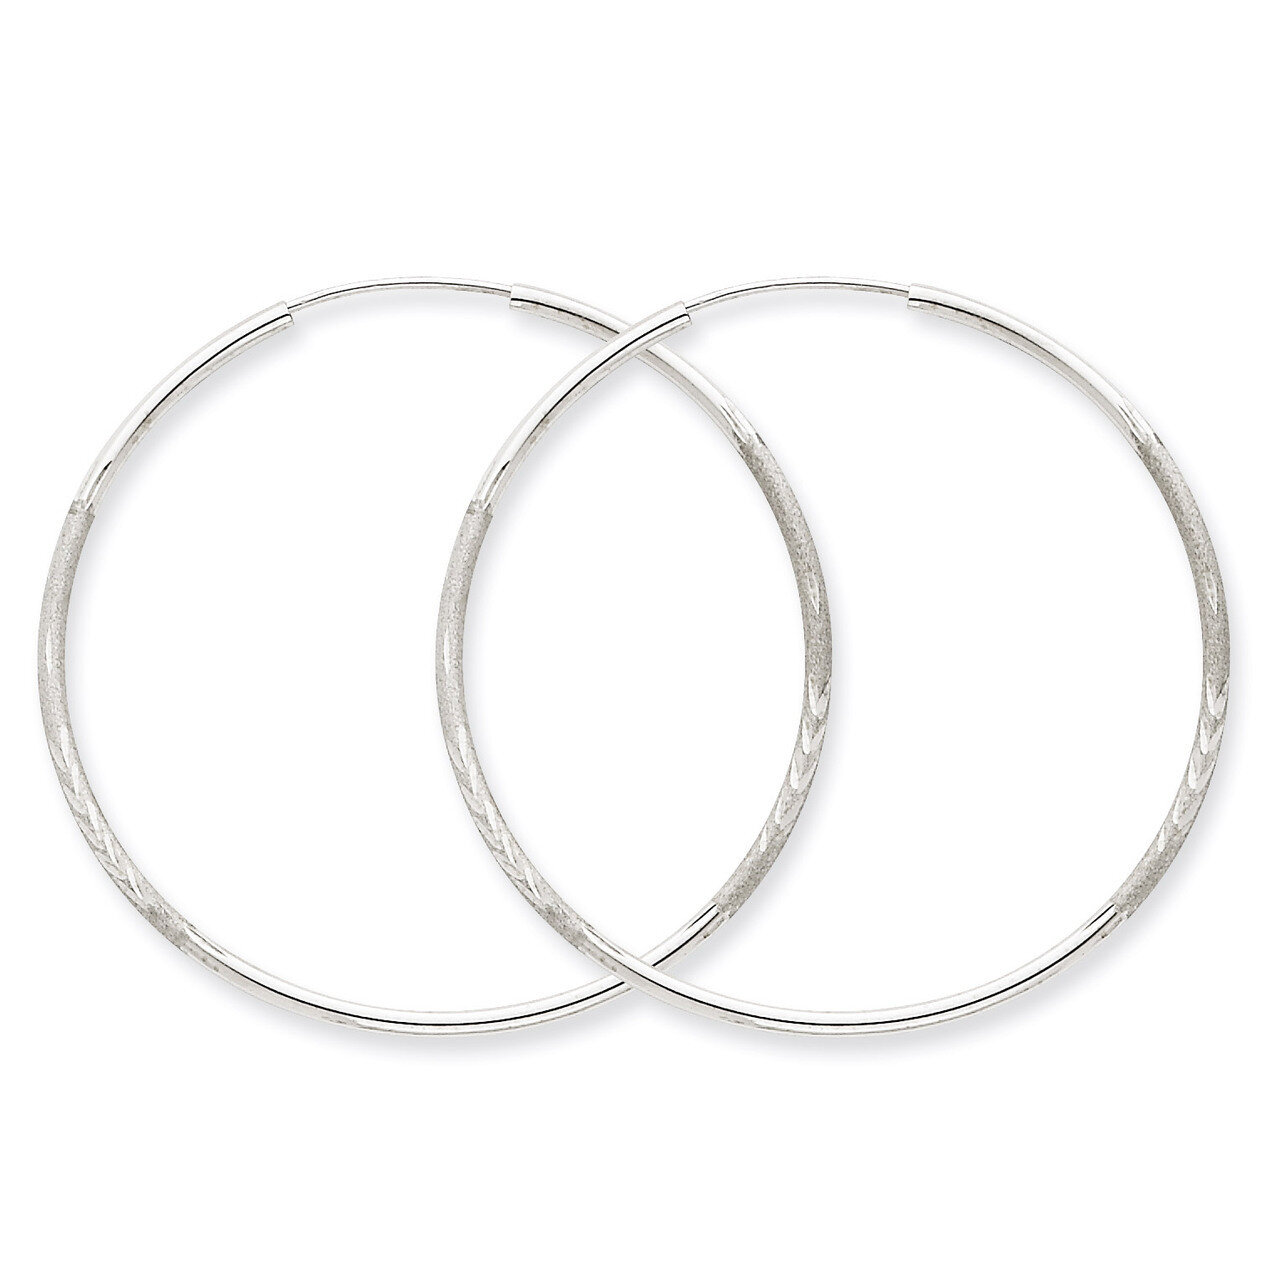 1.5mm Diamond-cut Endless Hoop Earrings 14k White Gold XY1193